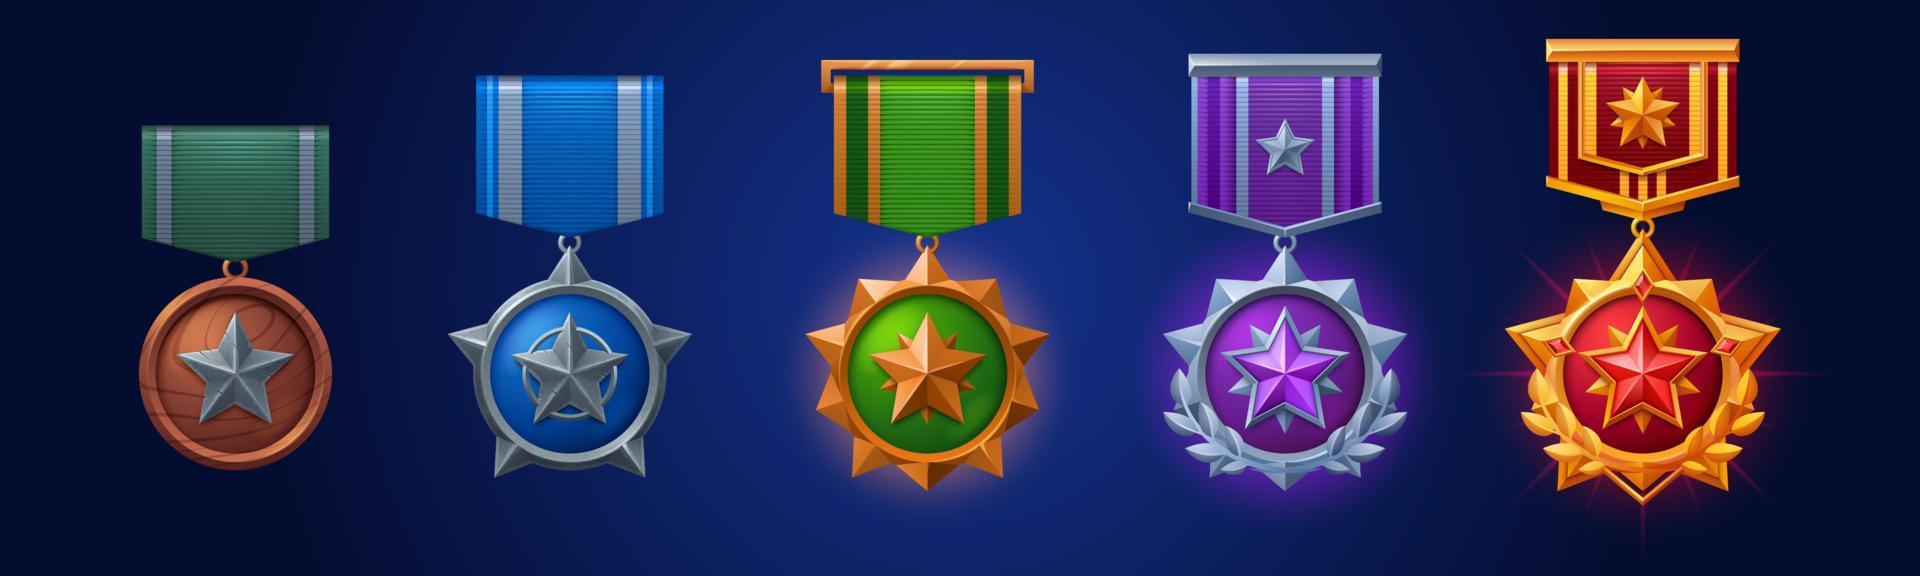 militare medaglie, esercito badge con stella e nastro vettore